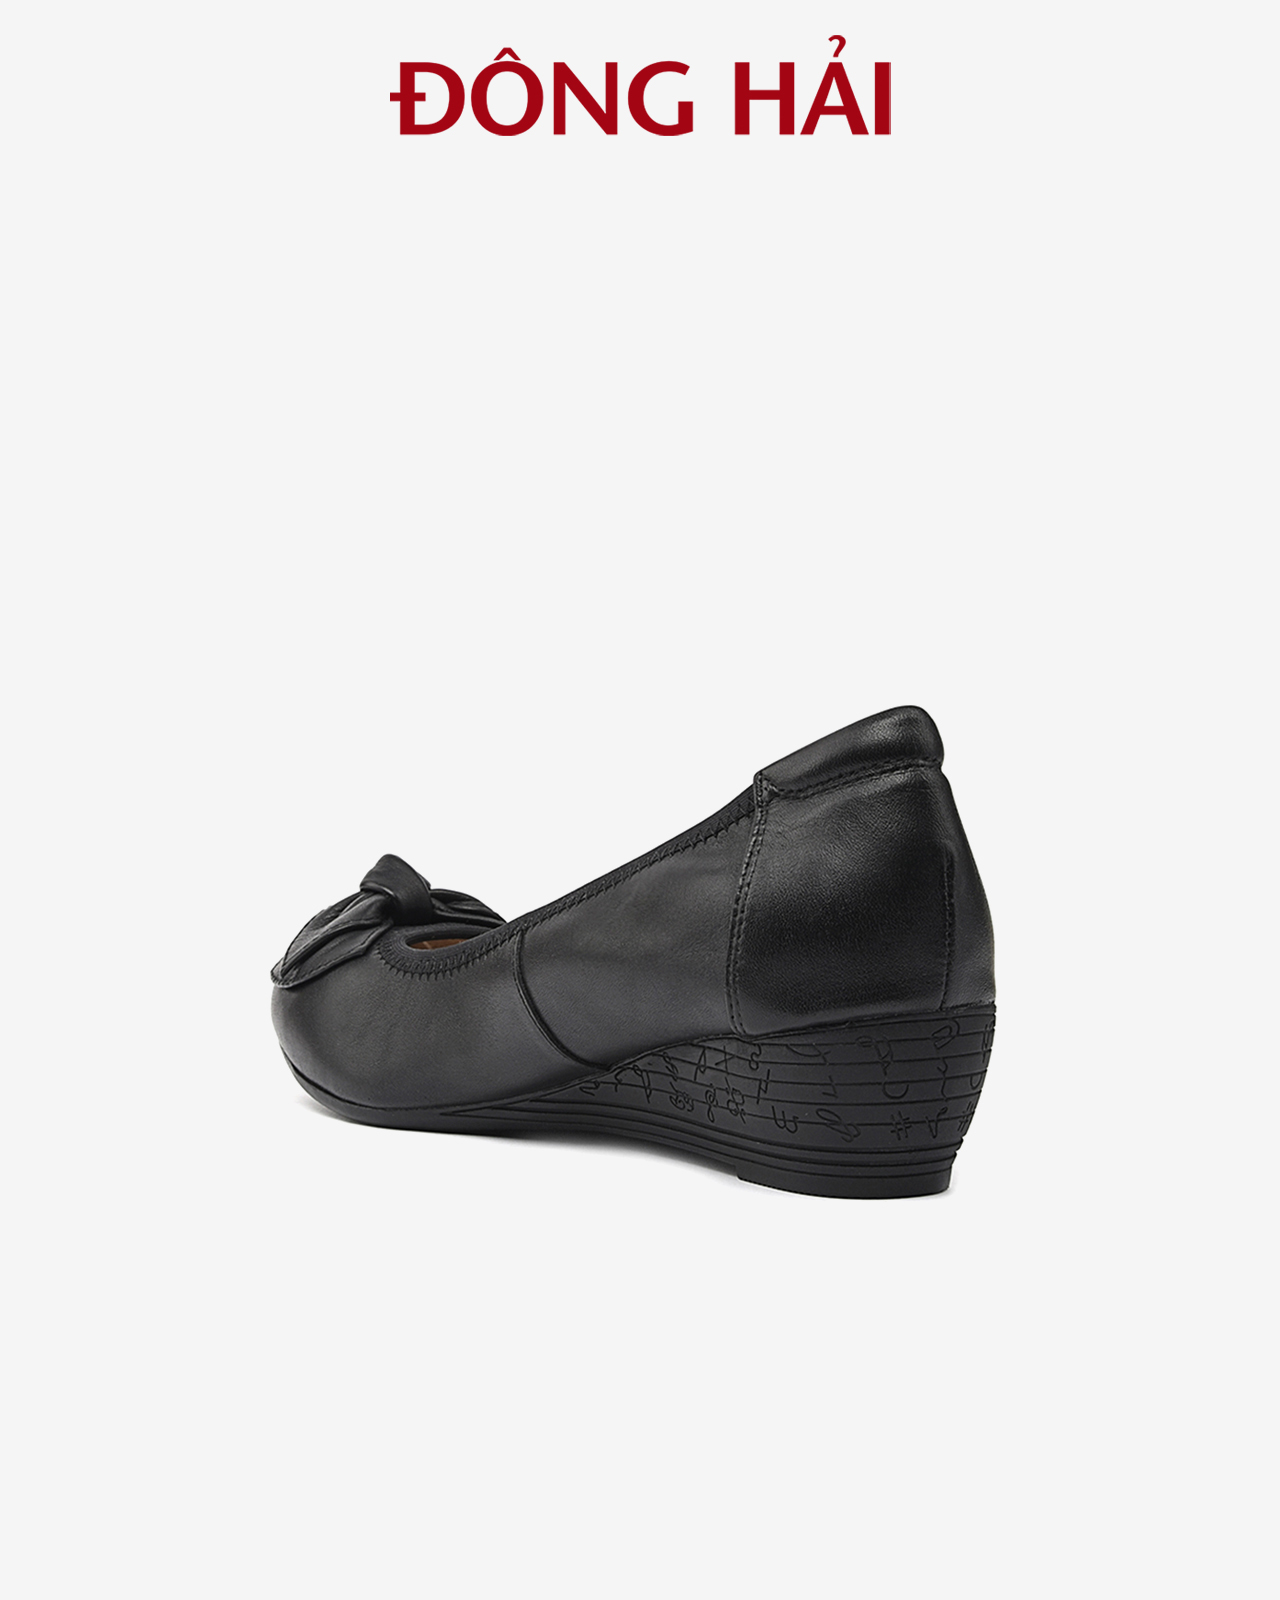 Giày Búp Bê Nữ Đông Hải - G7107